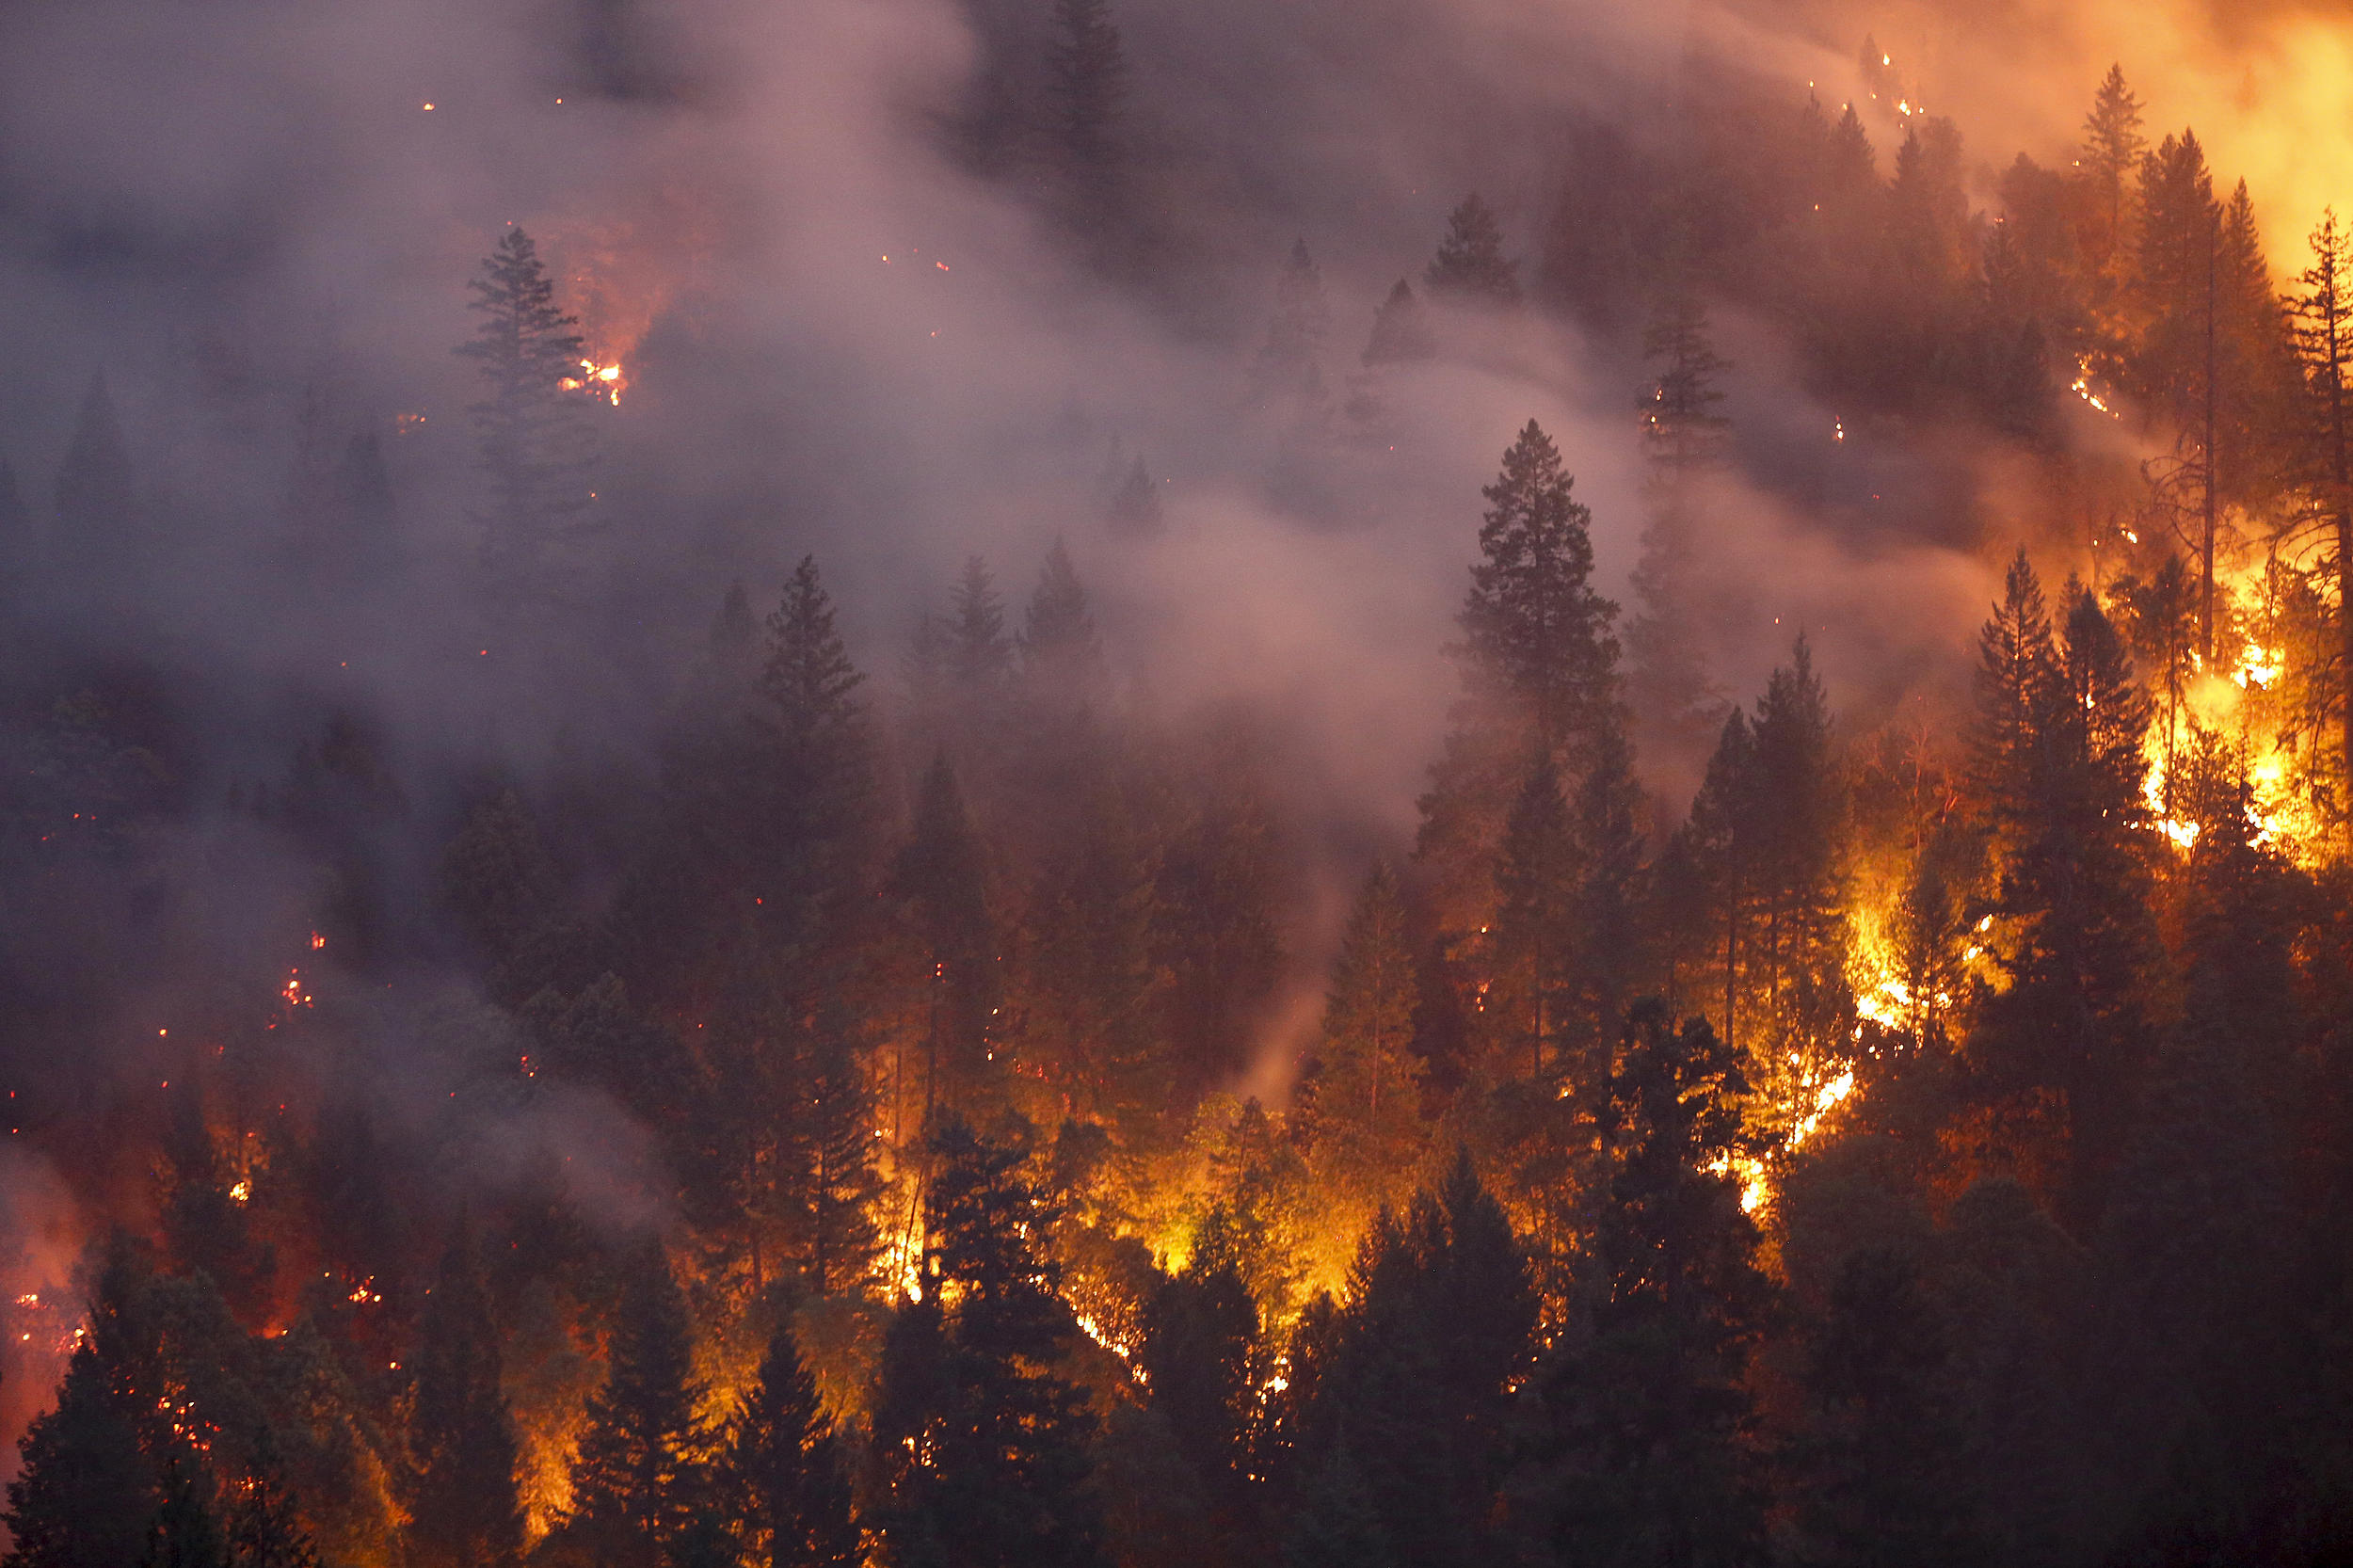 فرار الآلاف من حرائق غابات غير مسبوقة في كندا